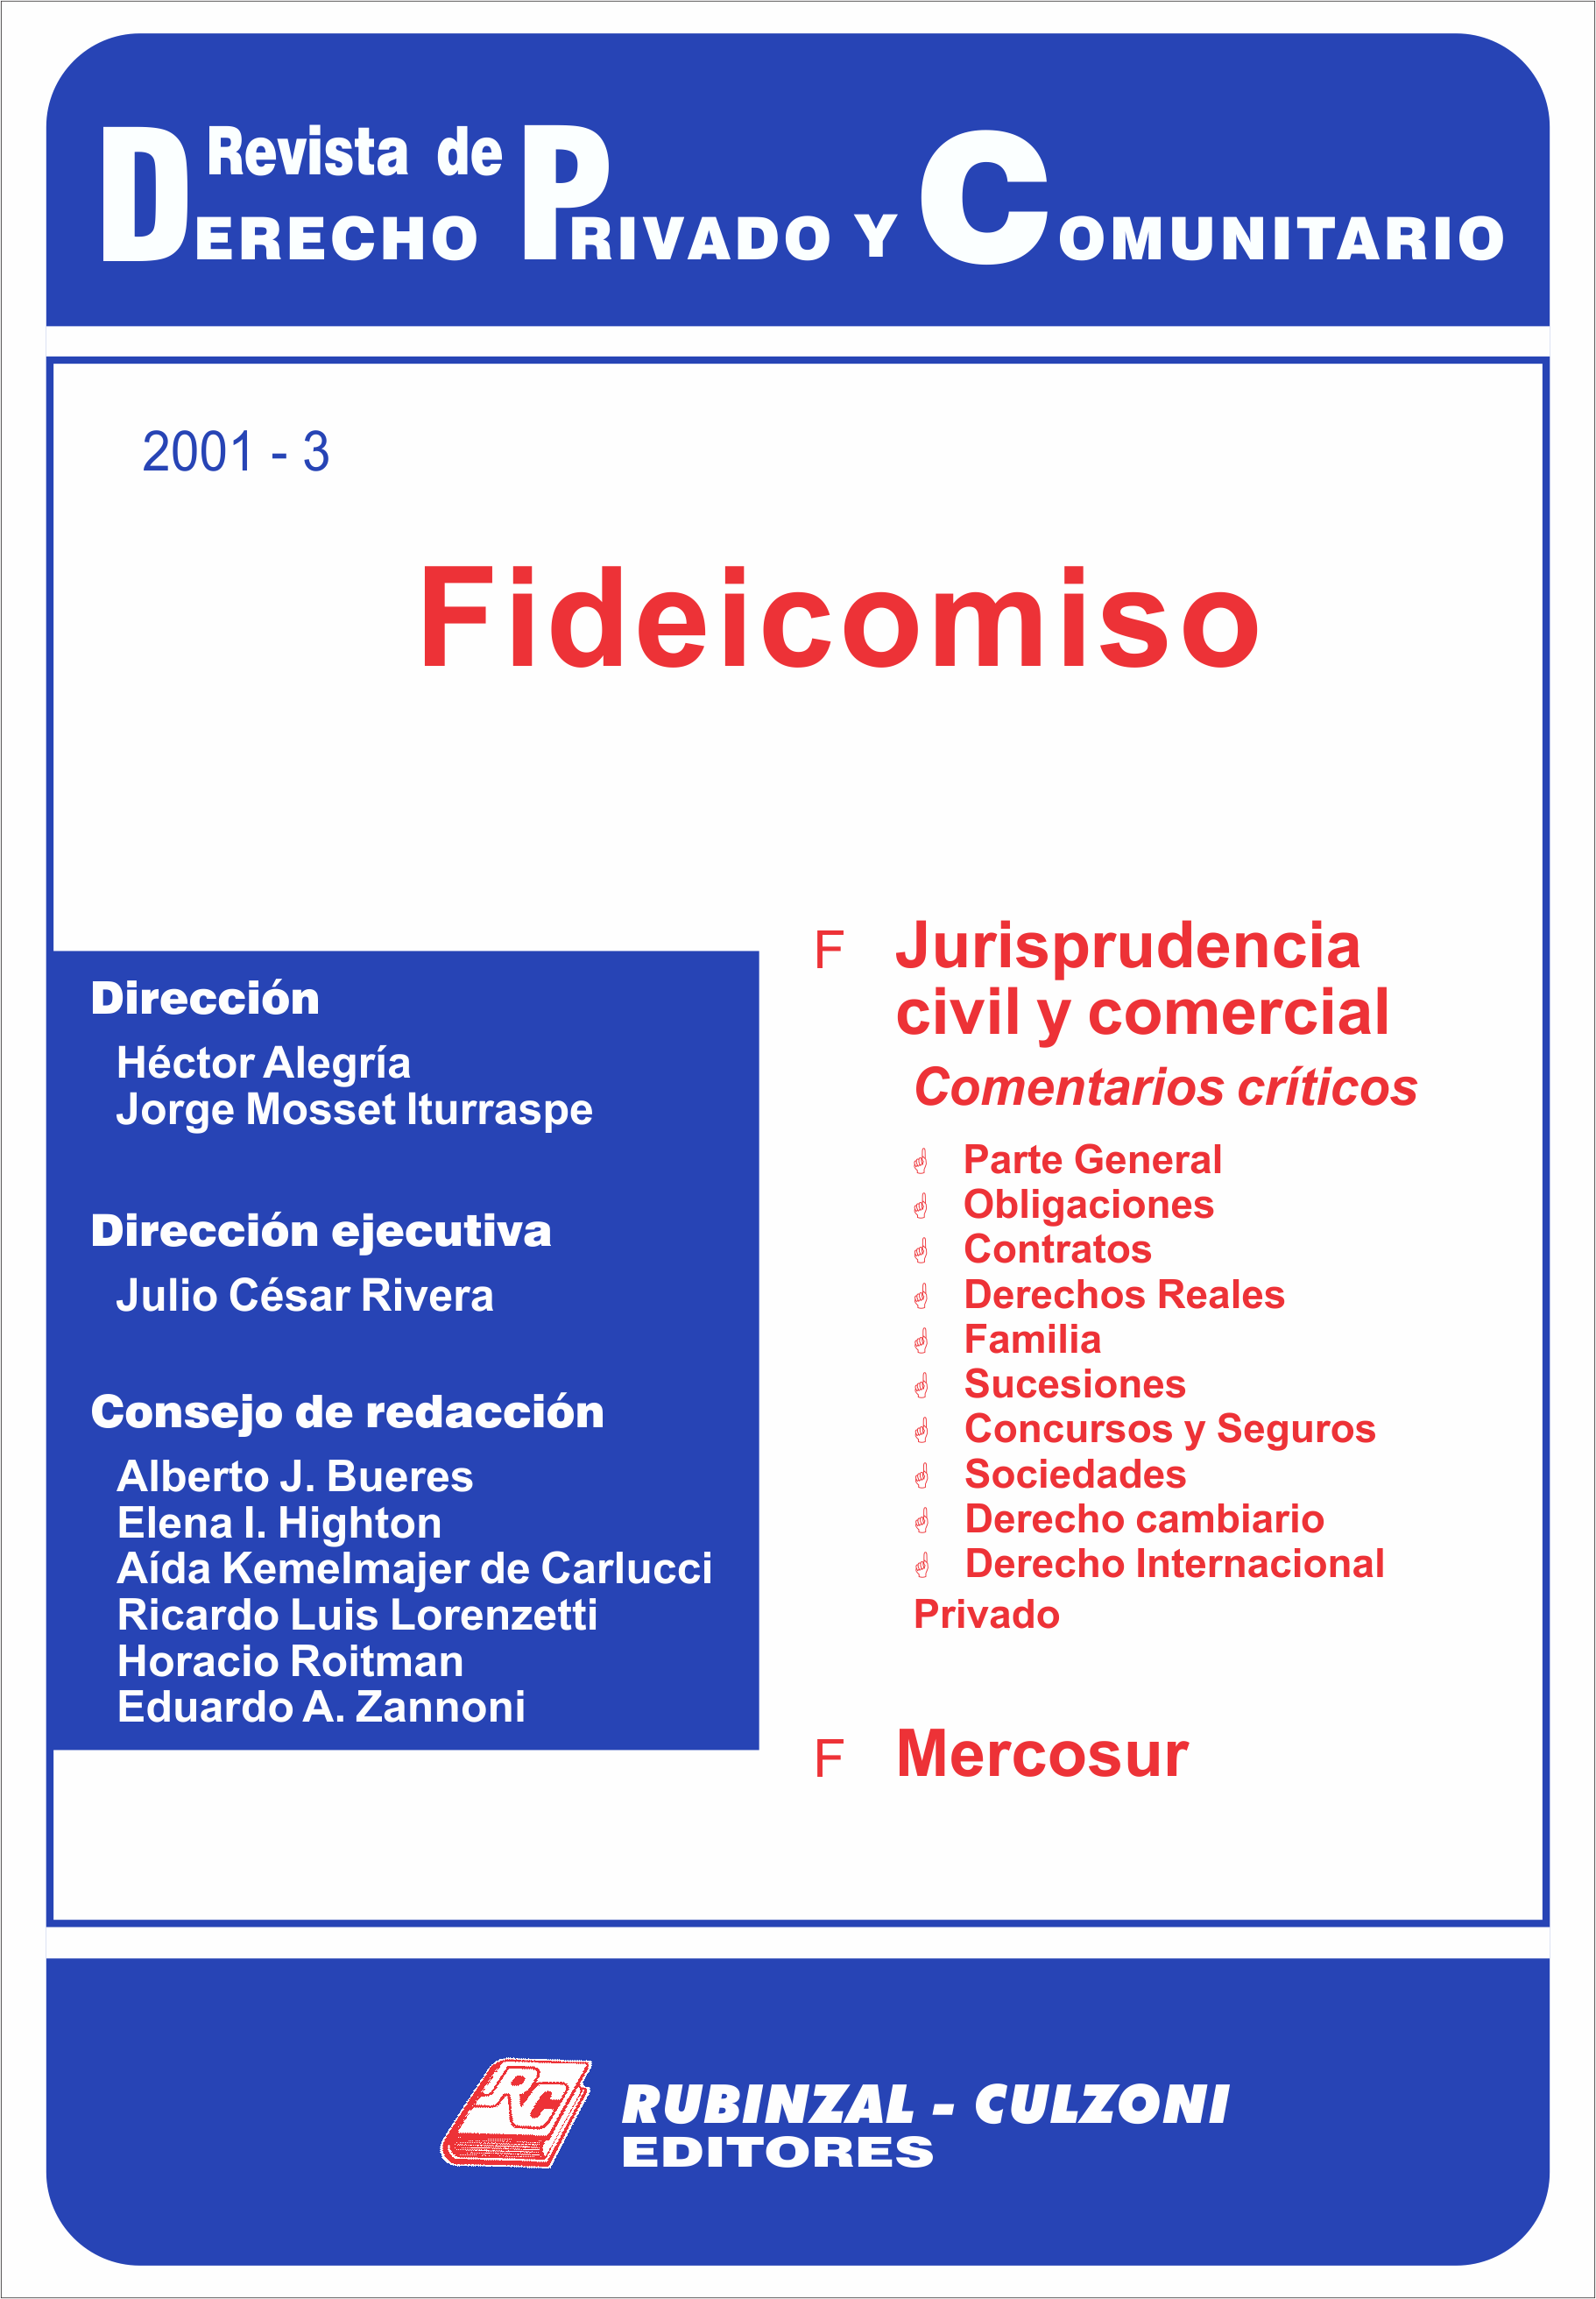 Revista de Derecho Privado y Comunitario - Fideicomiso.